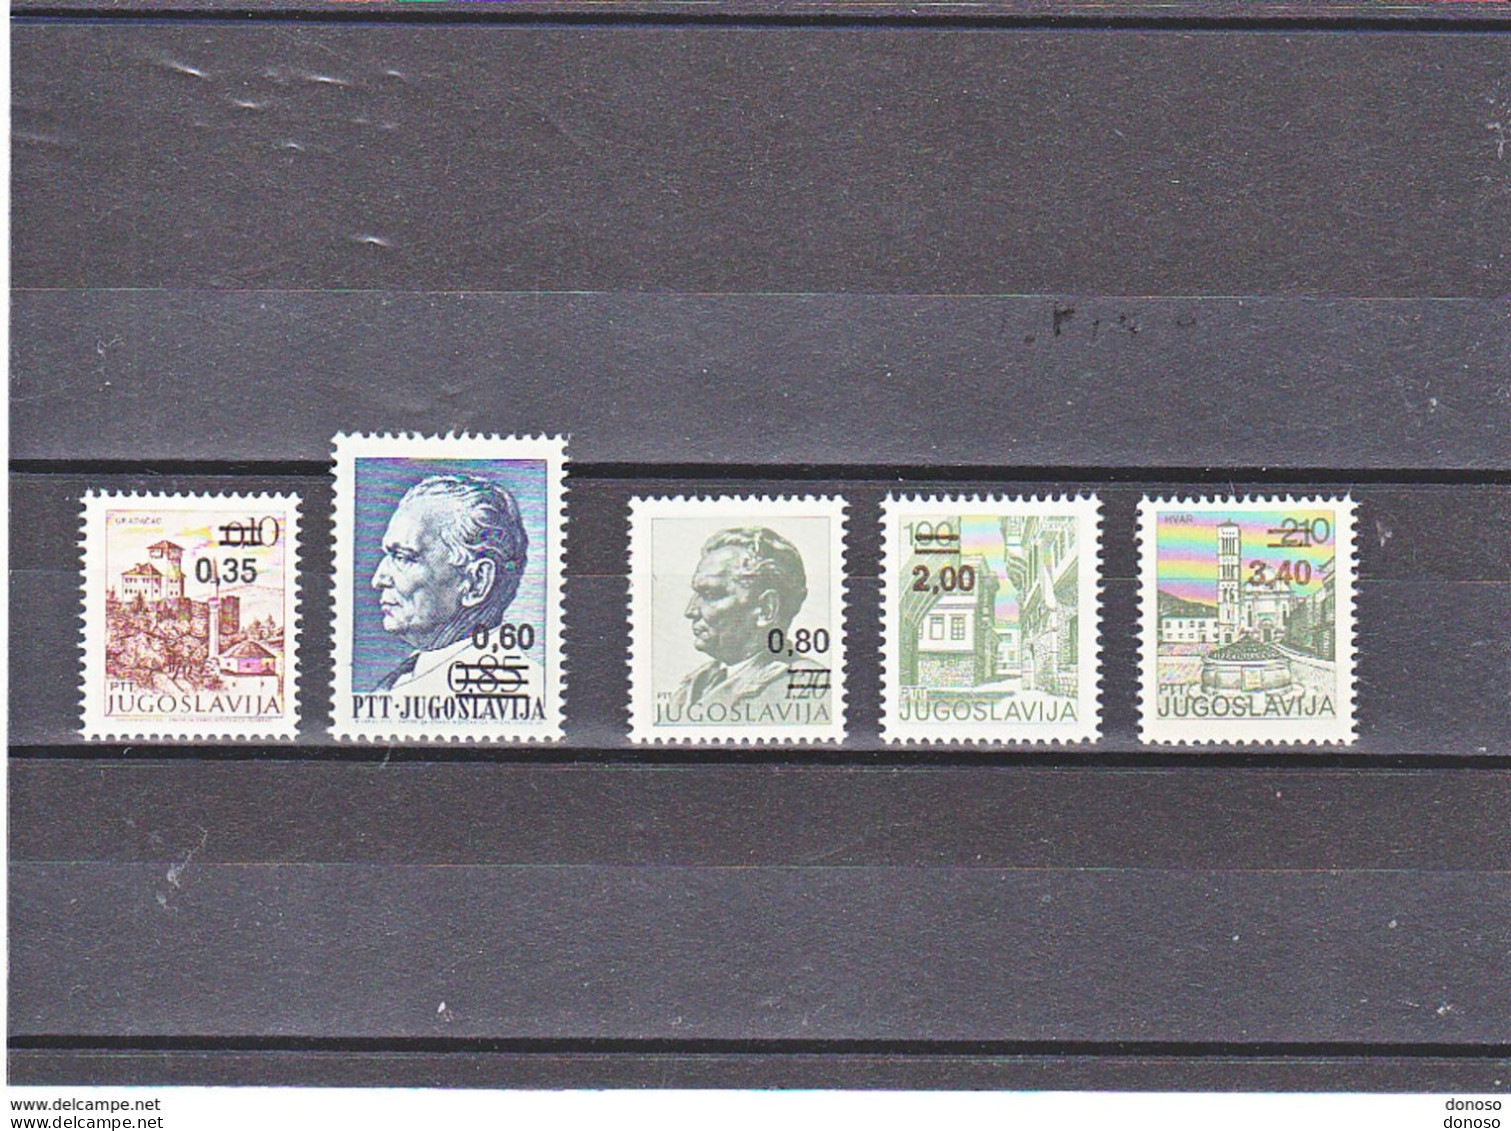 YOUGOSLAVIE 1978 Tourisme, Tito Surchargés Yvert 1636-1640 NEUF** MNH Cote 9,50 Euros - Unused Stamps